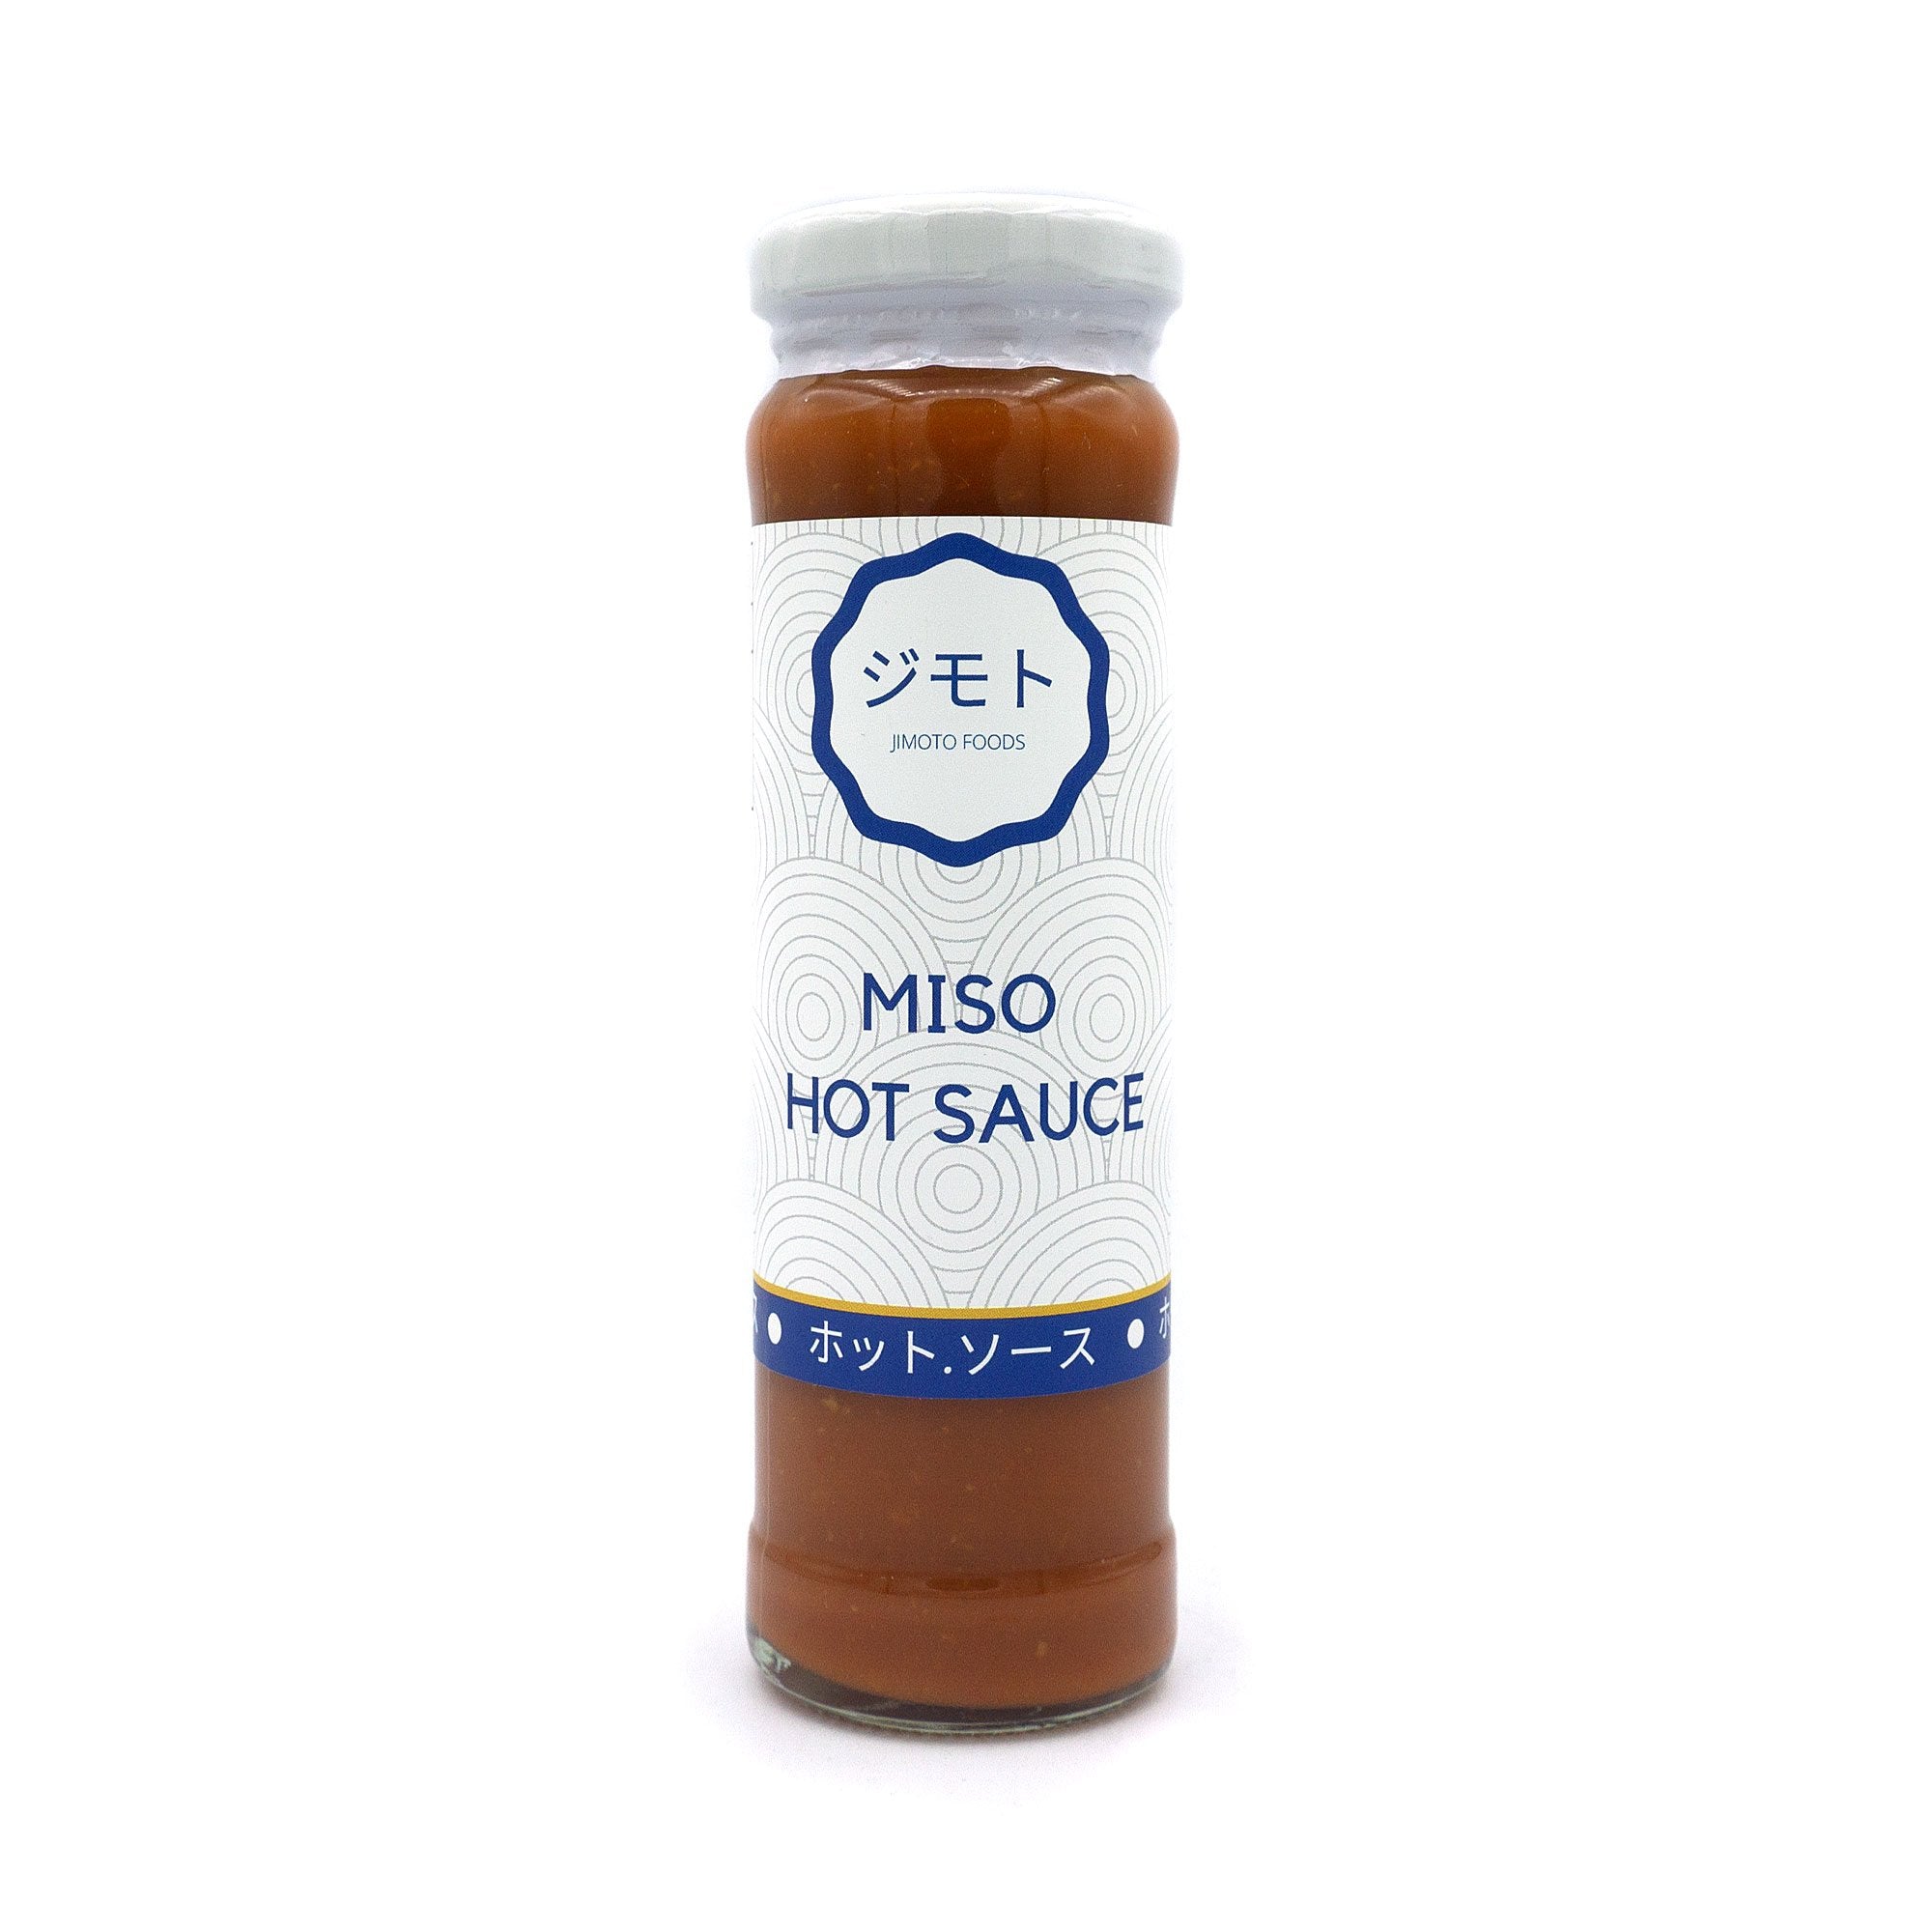 Hot Sauce - Jimoto Foods - Miso Hot Sauce